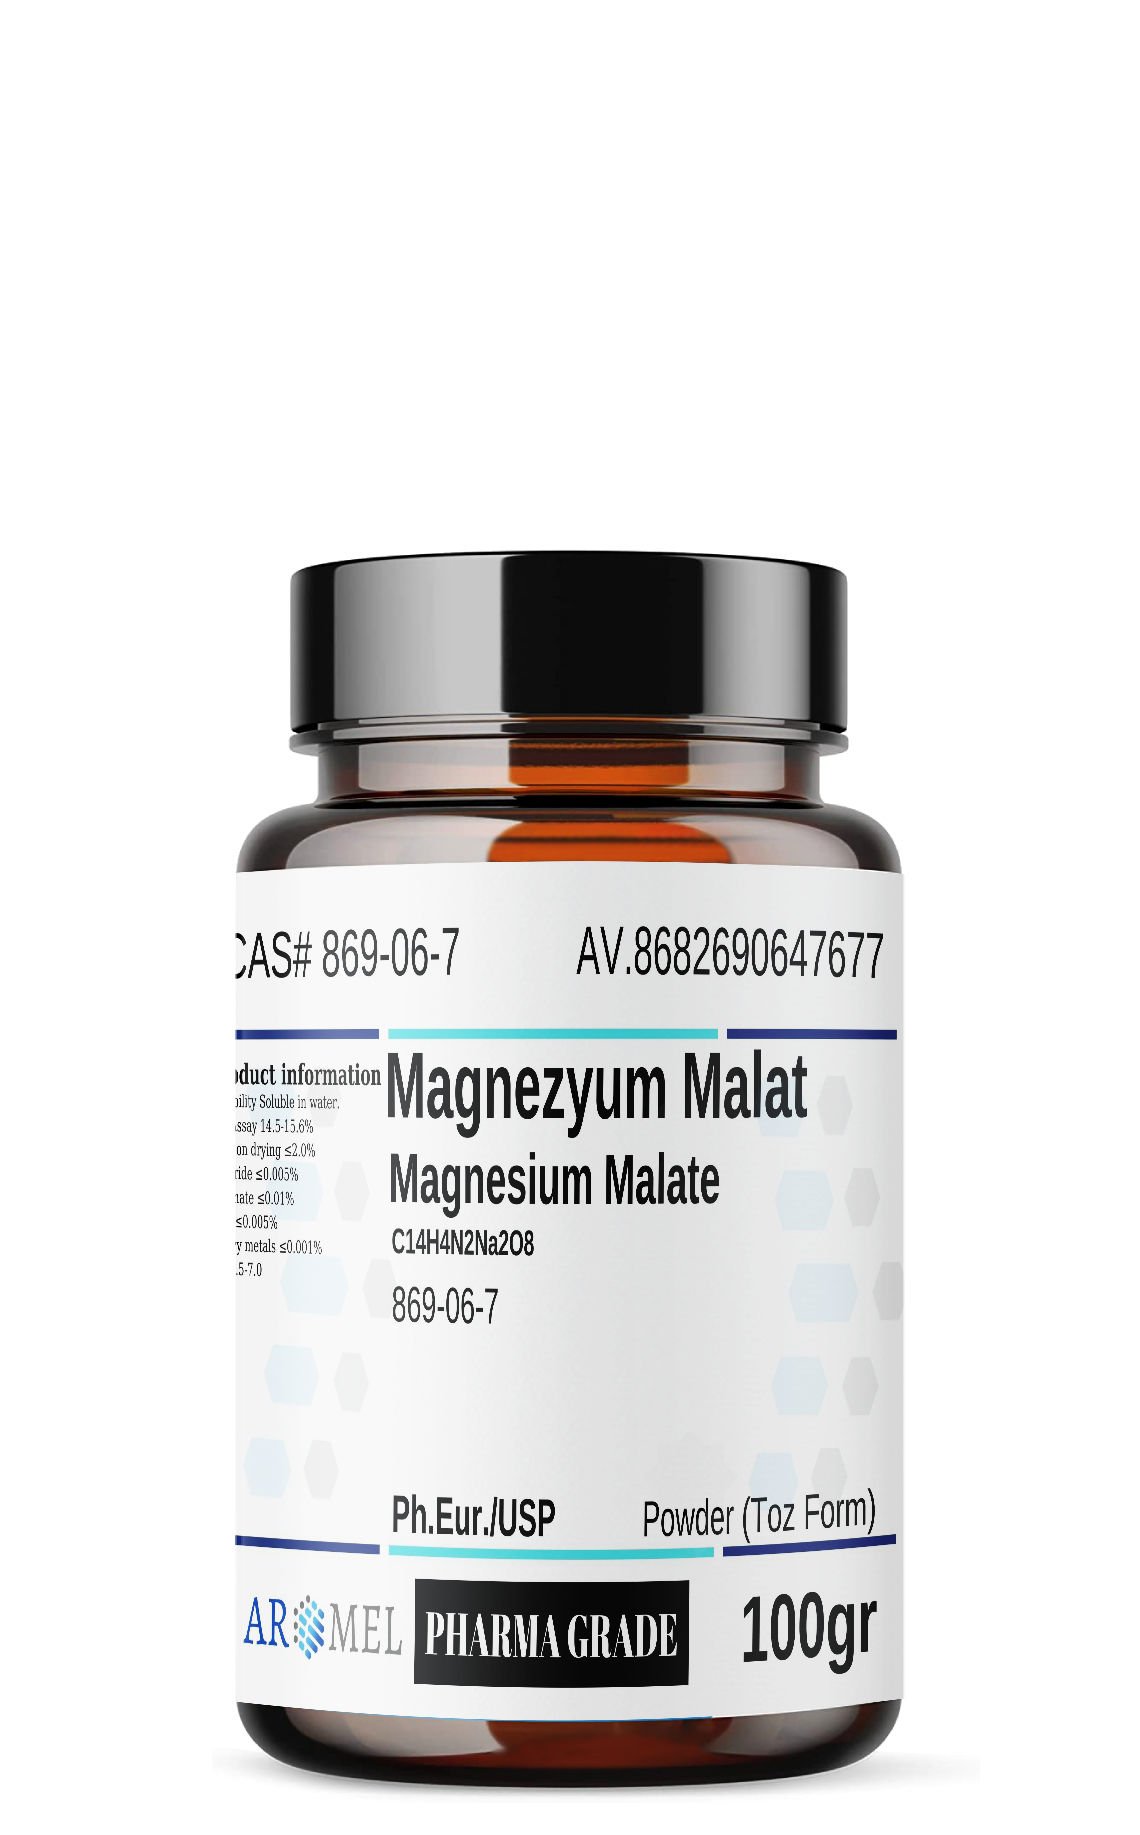 Aromel Magnezyum Malat | 100 gr | Magnesium Malate